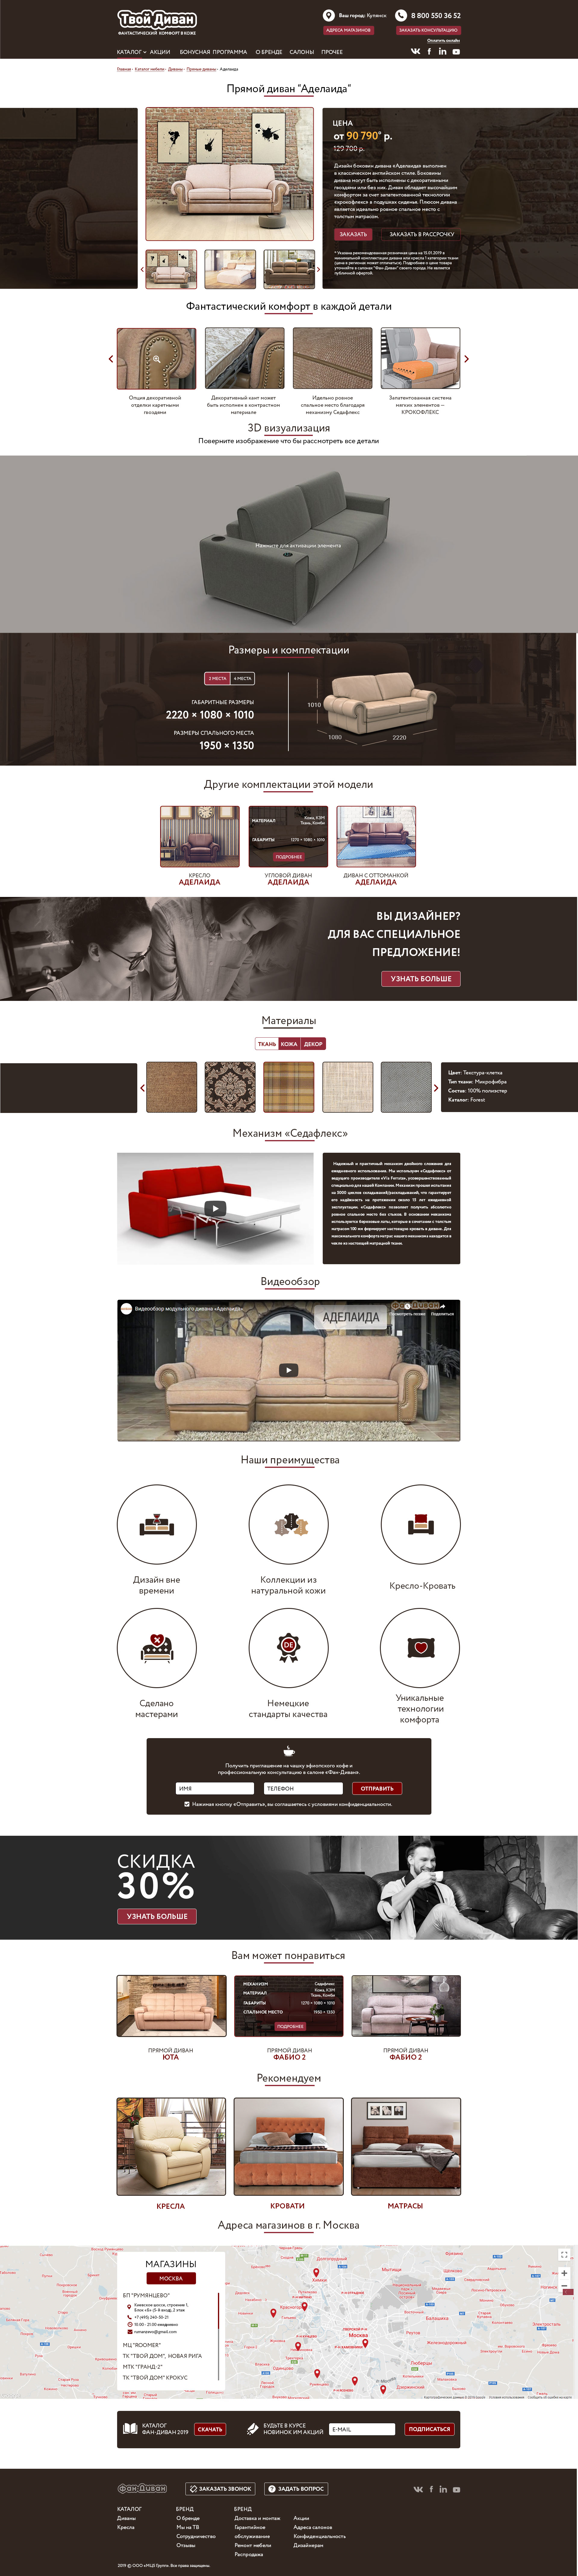 PSD furniture site template